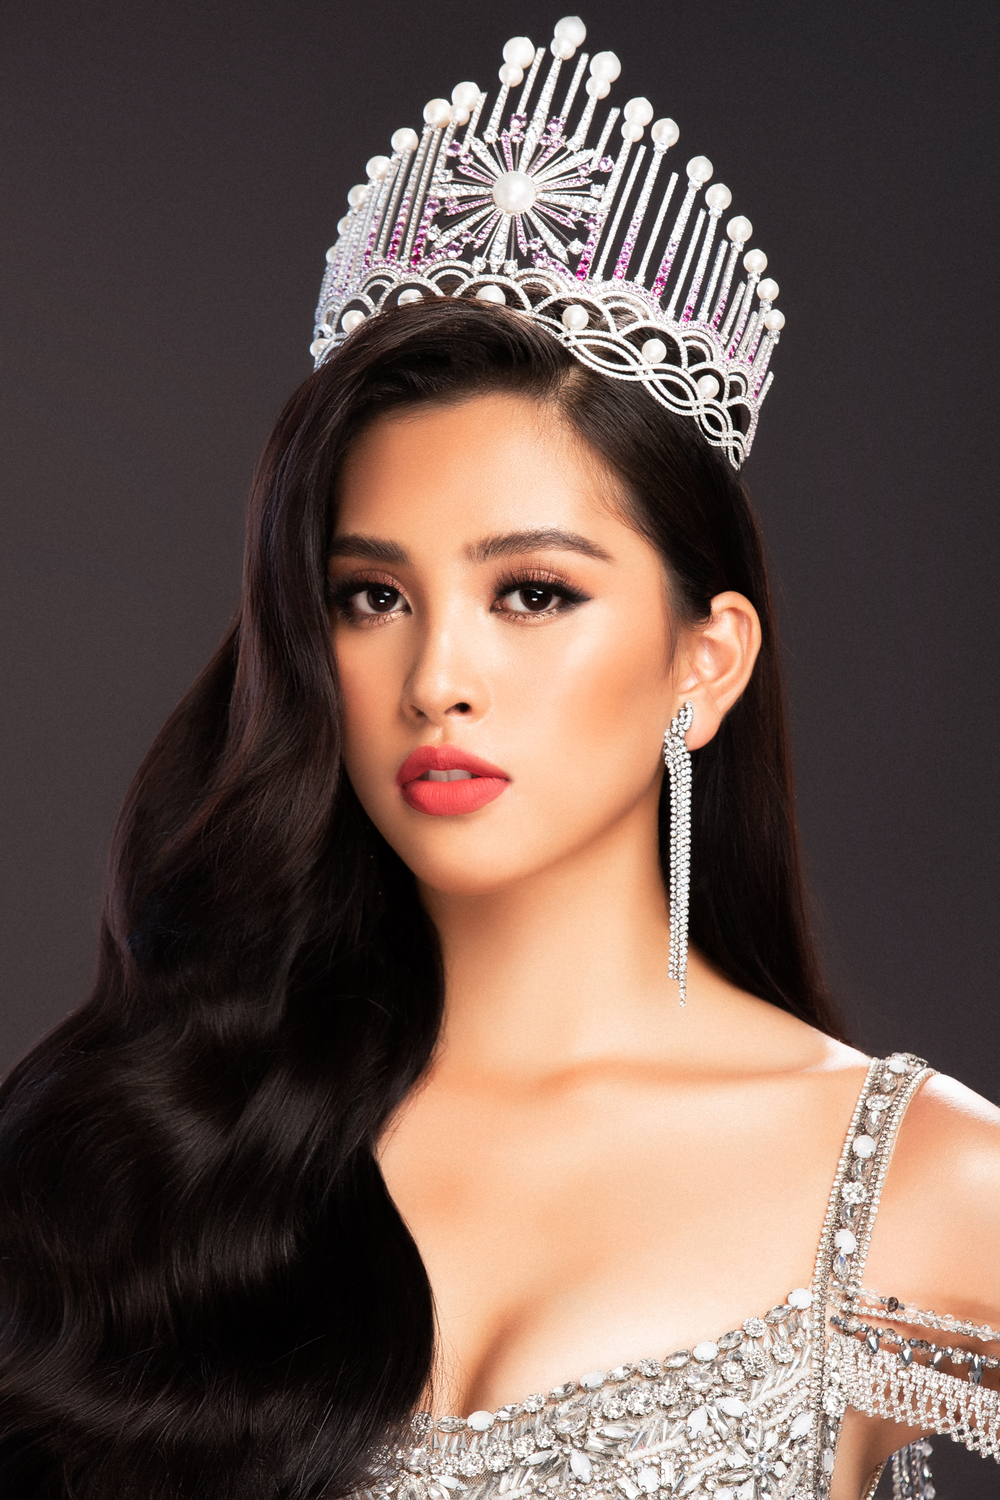 Lộ diện trang phục dạ hội của Hoa hậu Trần Tiểu Vy ở Miss World 2018